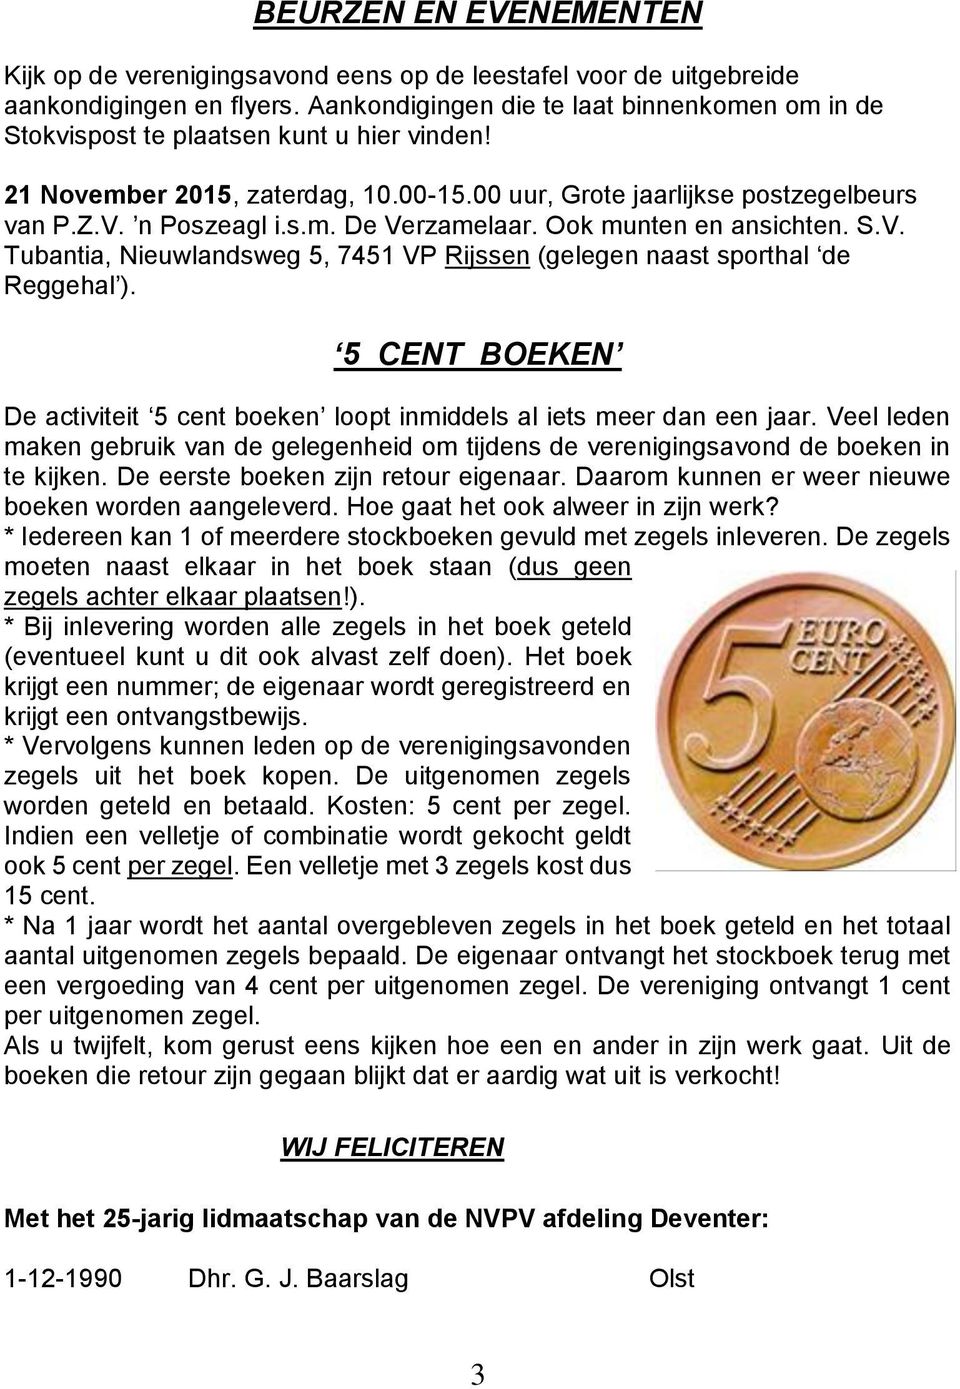 Ook munten en ansichten. S.V. Tubantia, Nieuwlandsweg 5, 7451 VP Rijssen (gelegen naast sporthal de Reggehal ). 5 CENT BOEKEN De activiteit 5 cent boeken loopt inmiddels al iets meer dan een jaar.